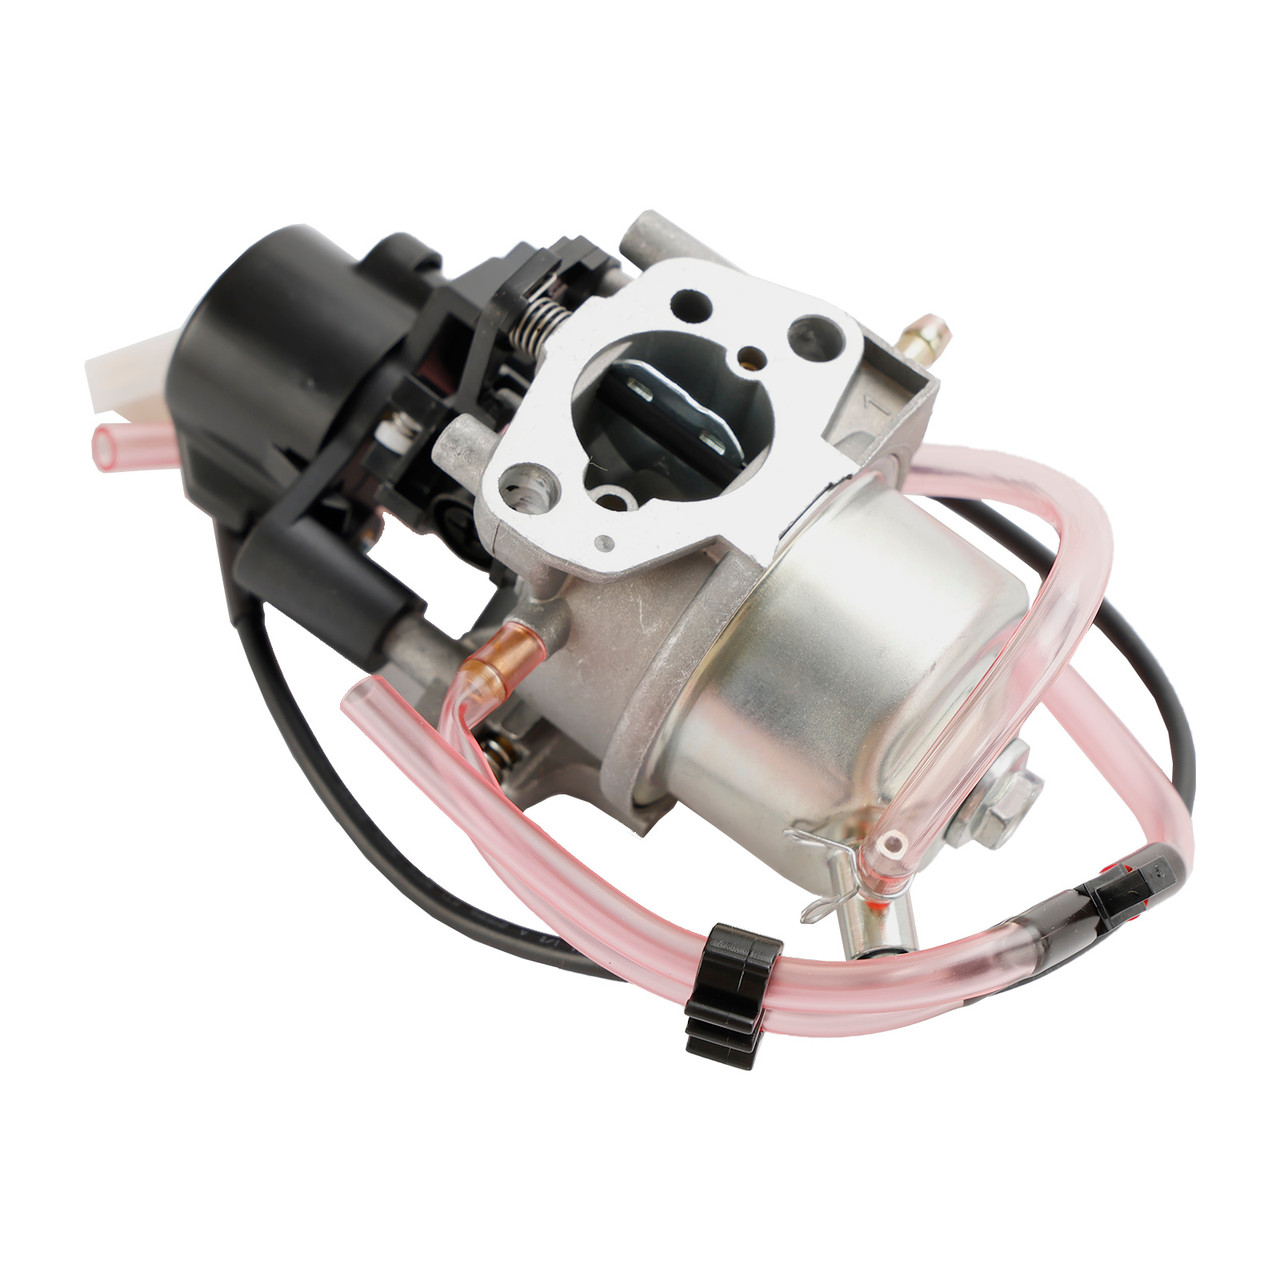 Carburetor Carb fit for HONDA EU3000 W/ Gaskets EU3000i 2000i EU3000is Generator